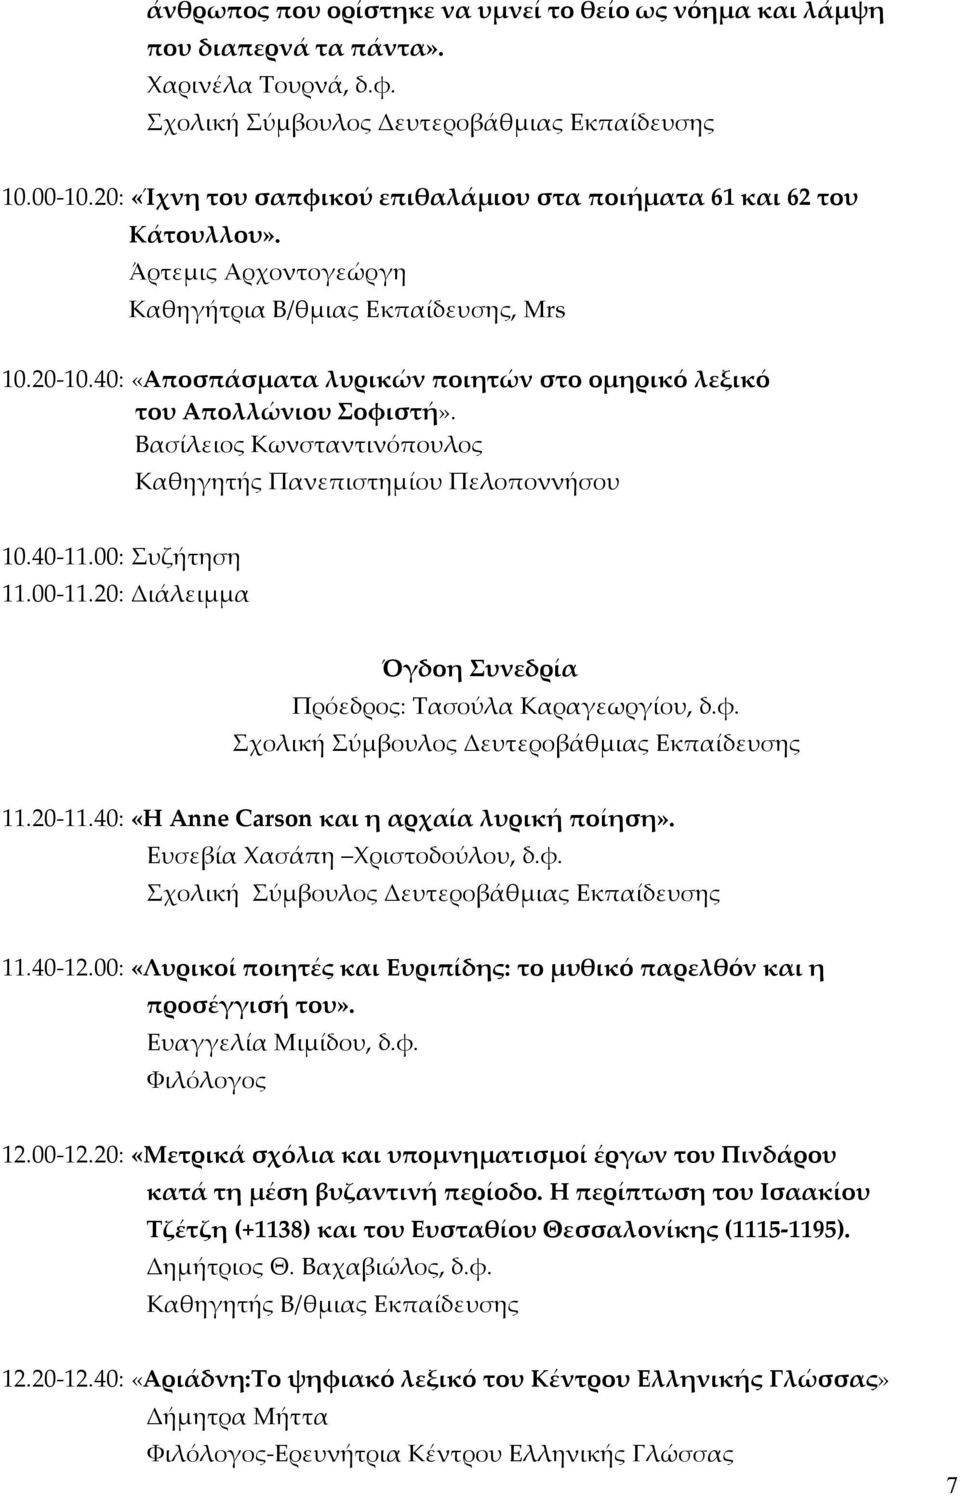 Βασίλειος Κωνσταντινόπουλος Καθηγητής Πανεπιστημίου Πελοποννήσου 10.40-11.00: Συζήτηση 11.00-11.20: Διάλειμμα Όγδοη Συνεδρία Πρόεδρος: Τασούλα Καραγεωργίου, δ.φ. 11.20-11.